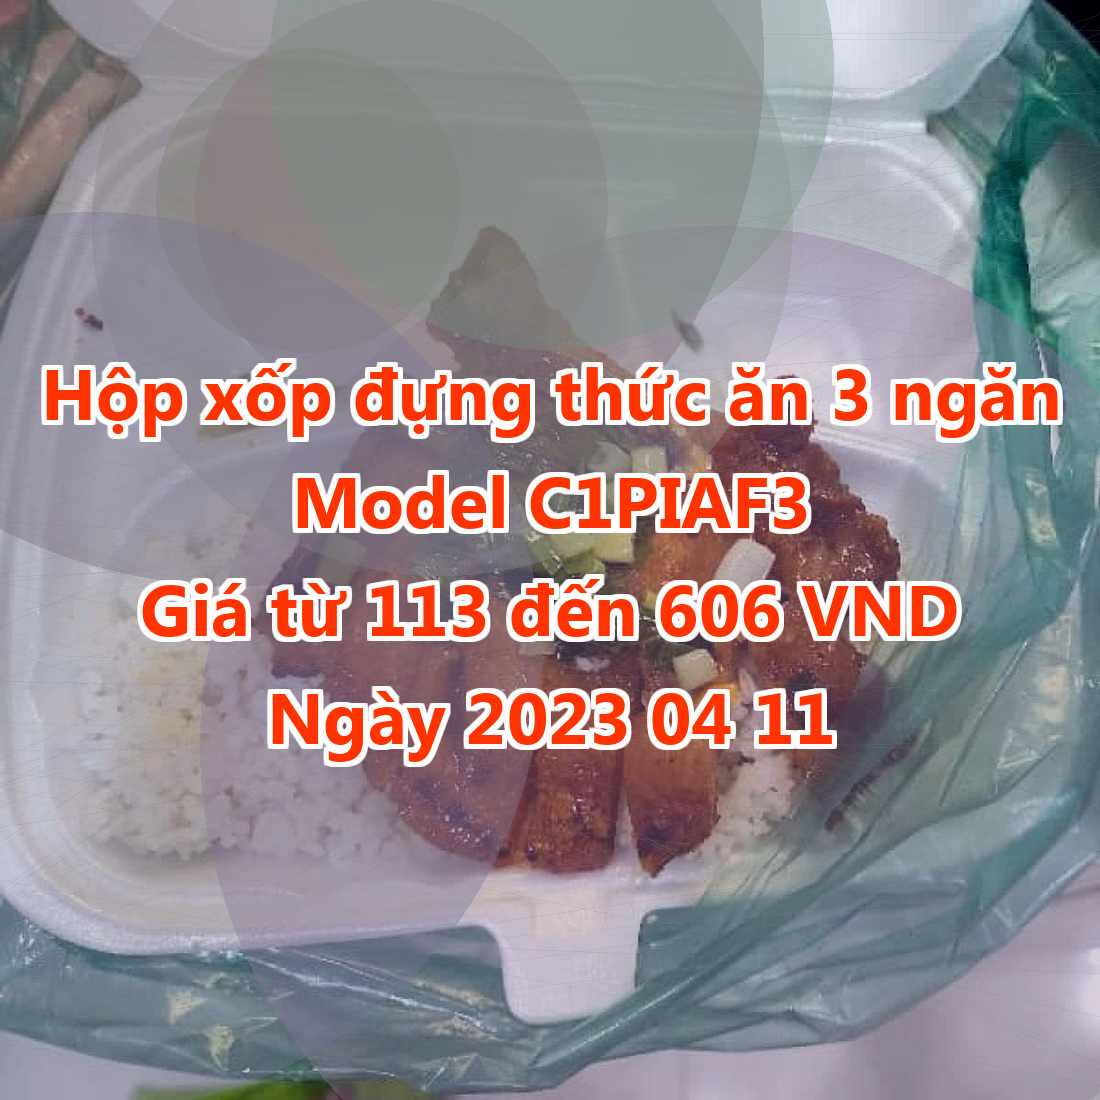 Hộp xốp đựng thức ăn 3 ngăn - Model C1PIAF3